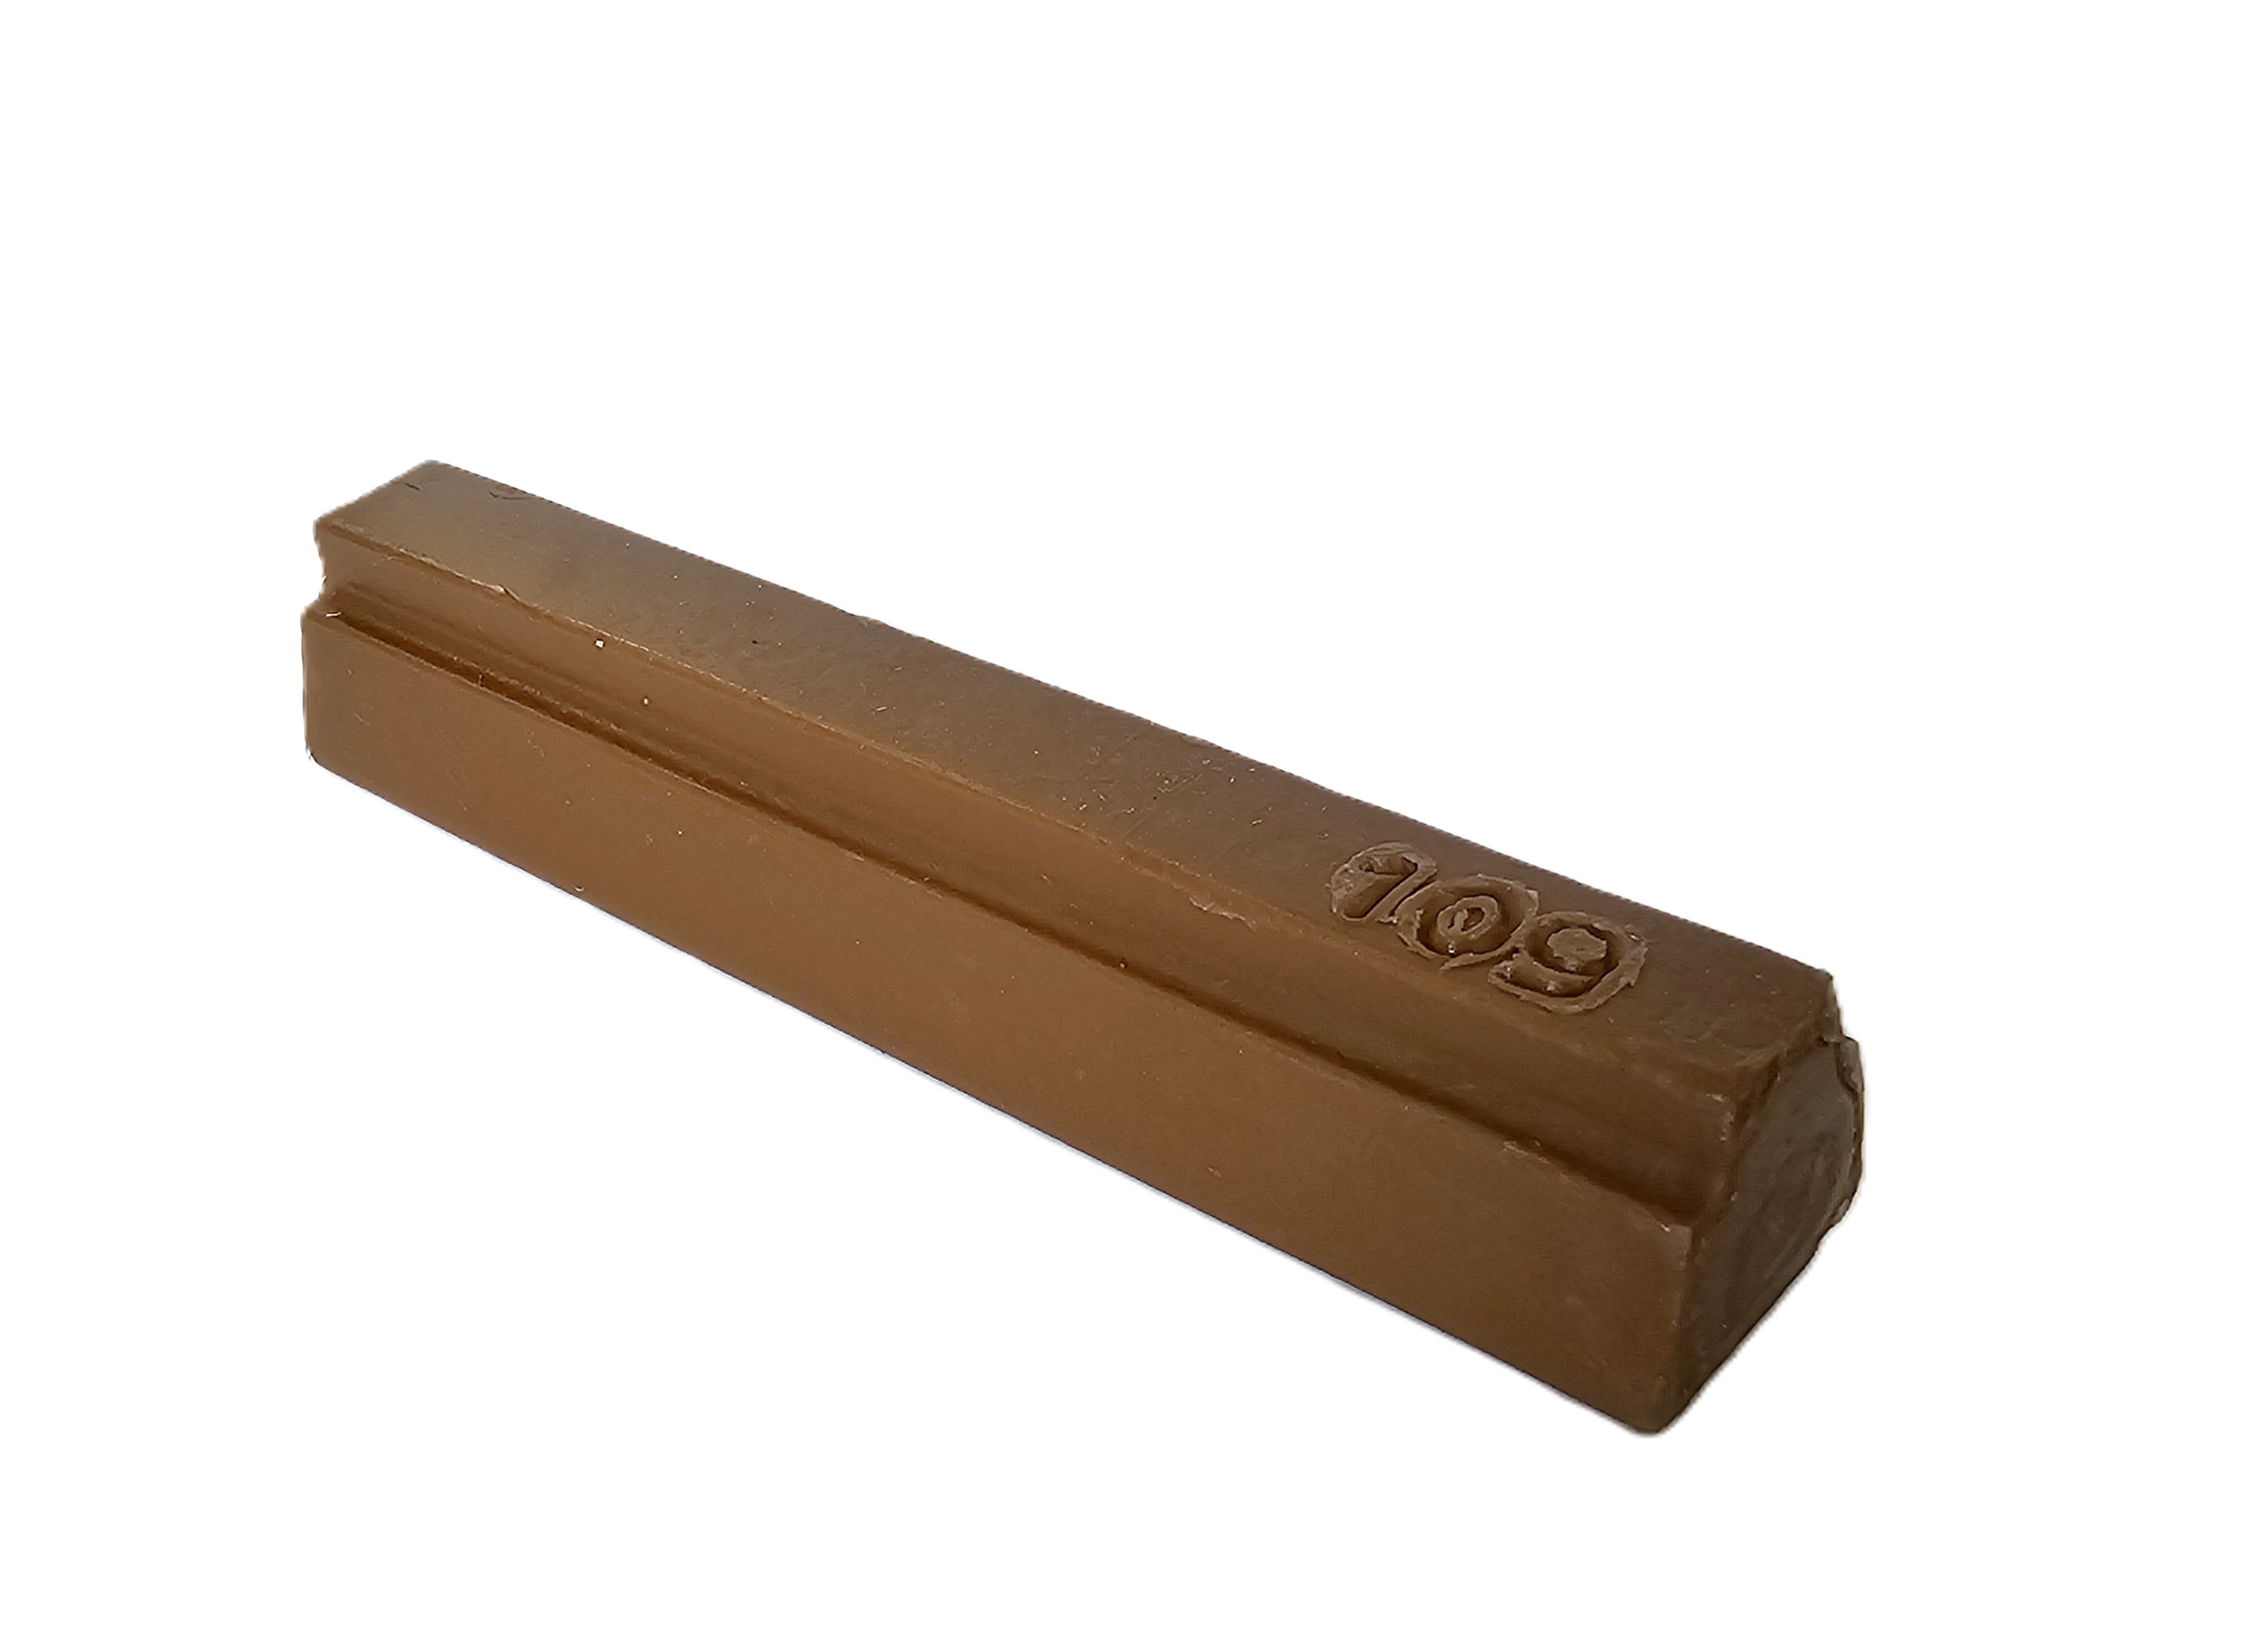 Konig 8cm Soft Wax or Hard Wax Filler Stick 109 LIGHT WALNUT